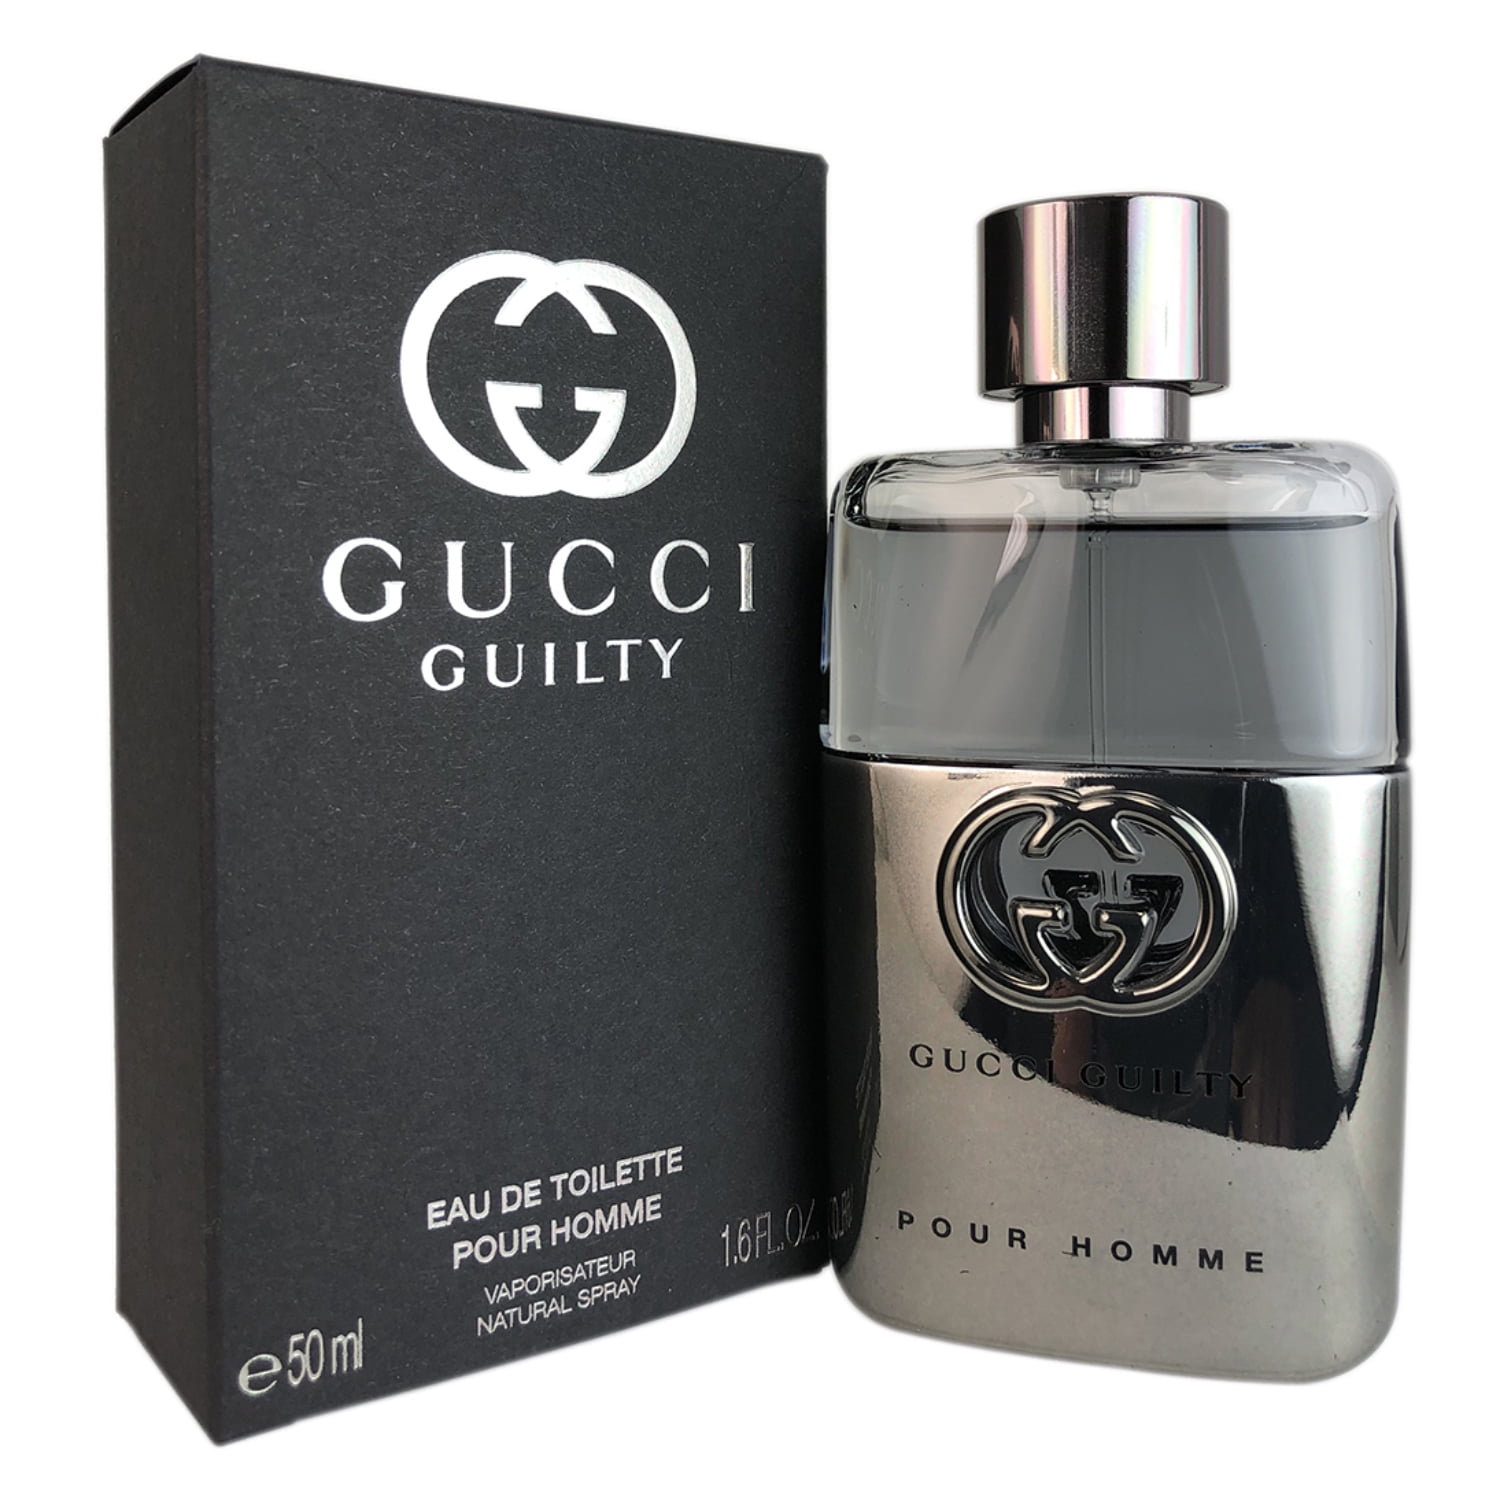 Guilty Pour Homme by Gucci de Toilette for Men Eau Spray oz 1.6